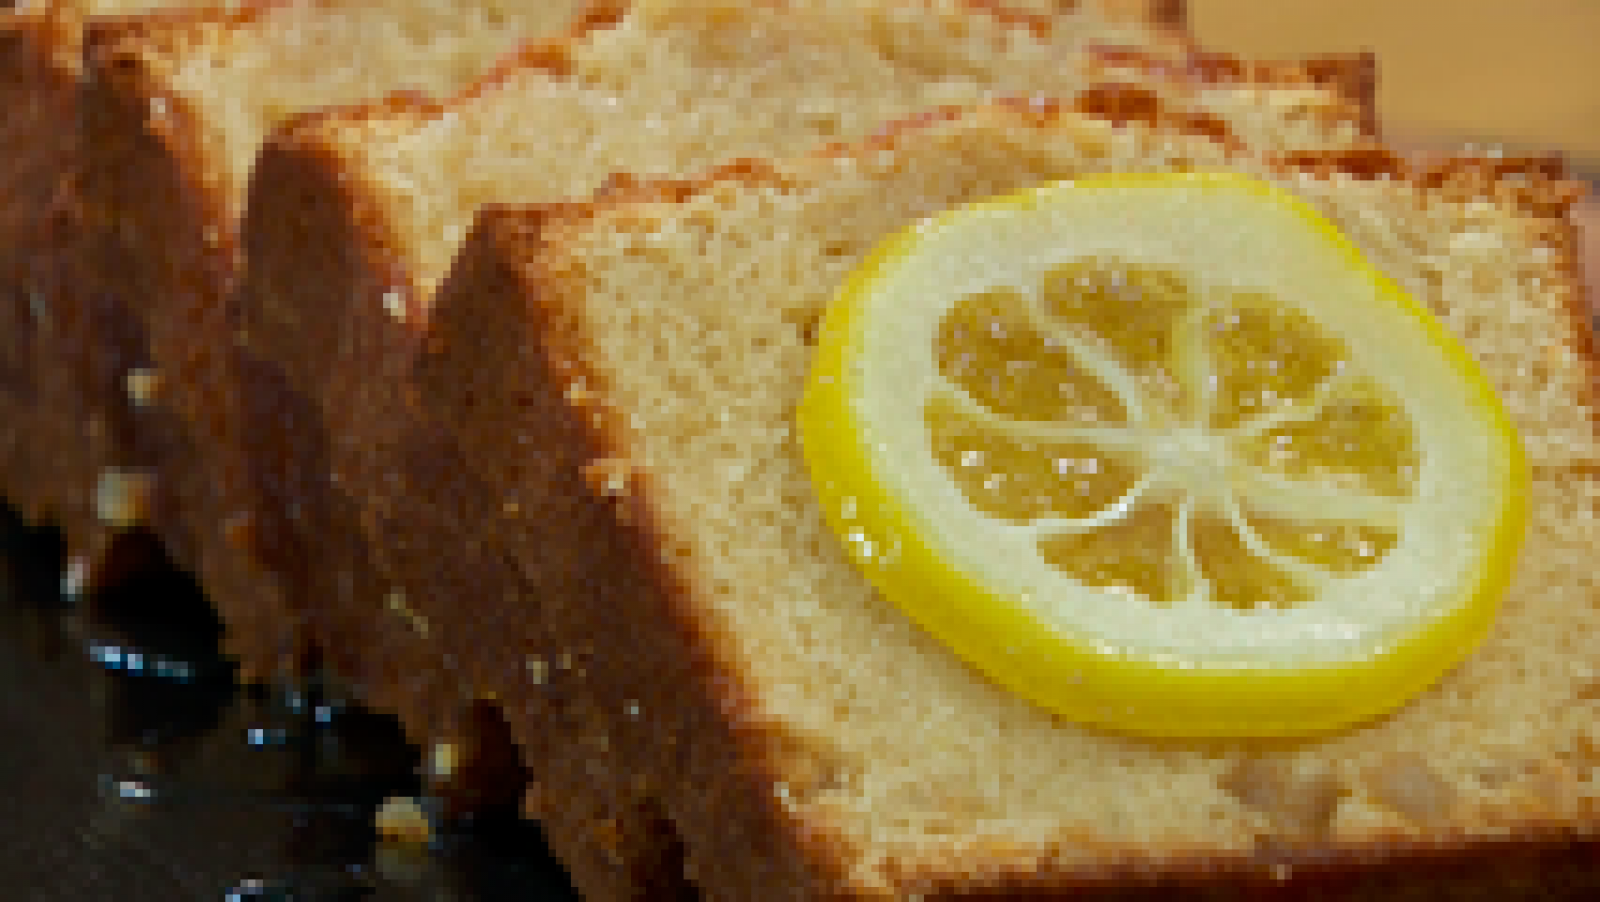 Torres en la cocina - Cake de limón 